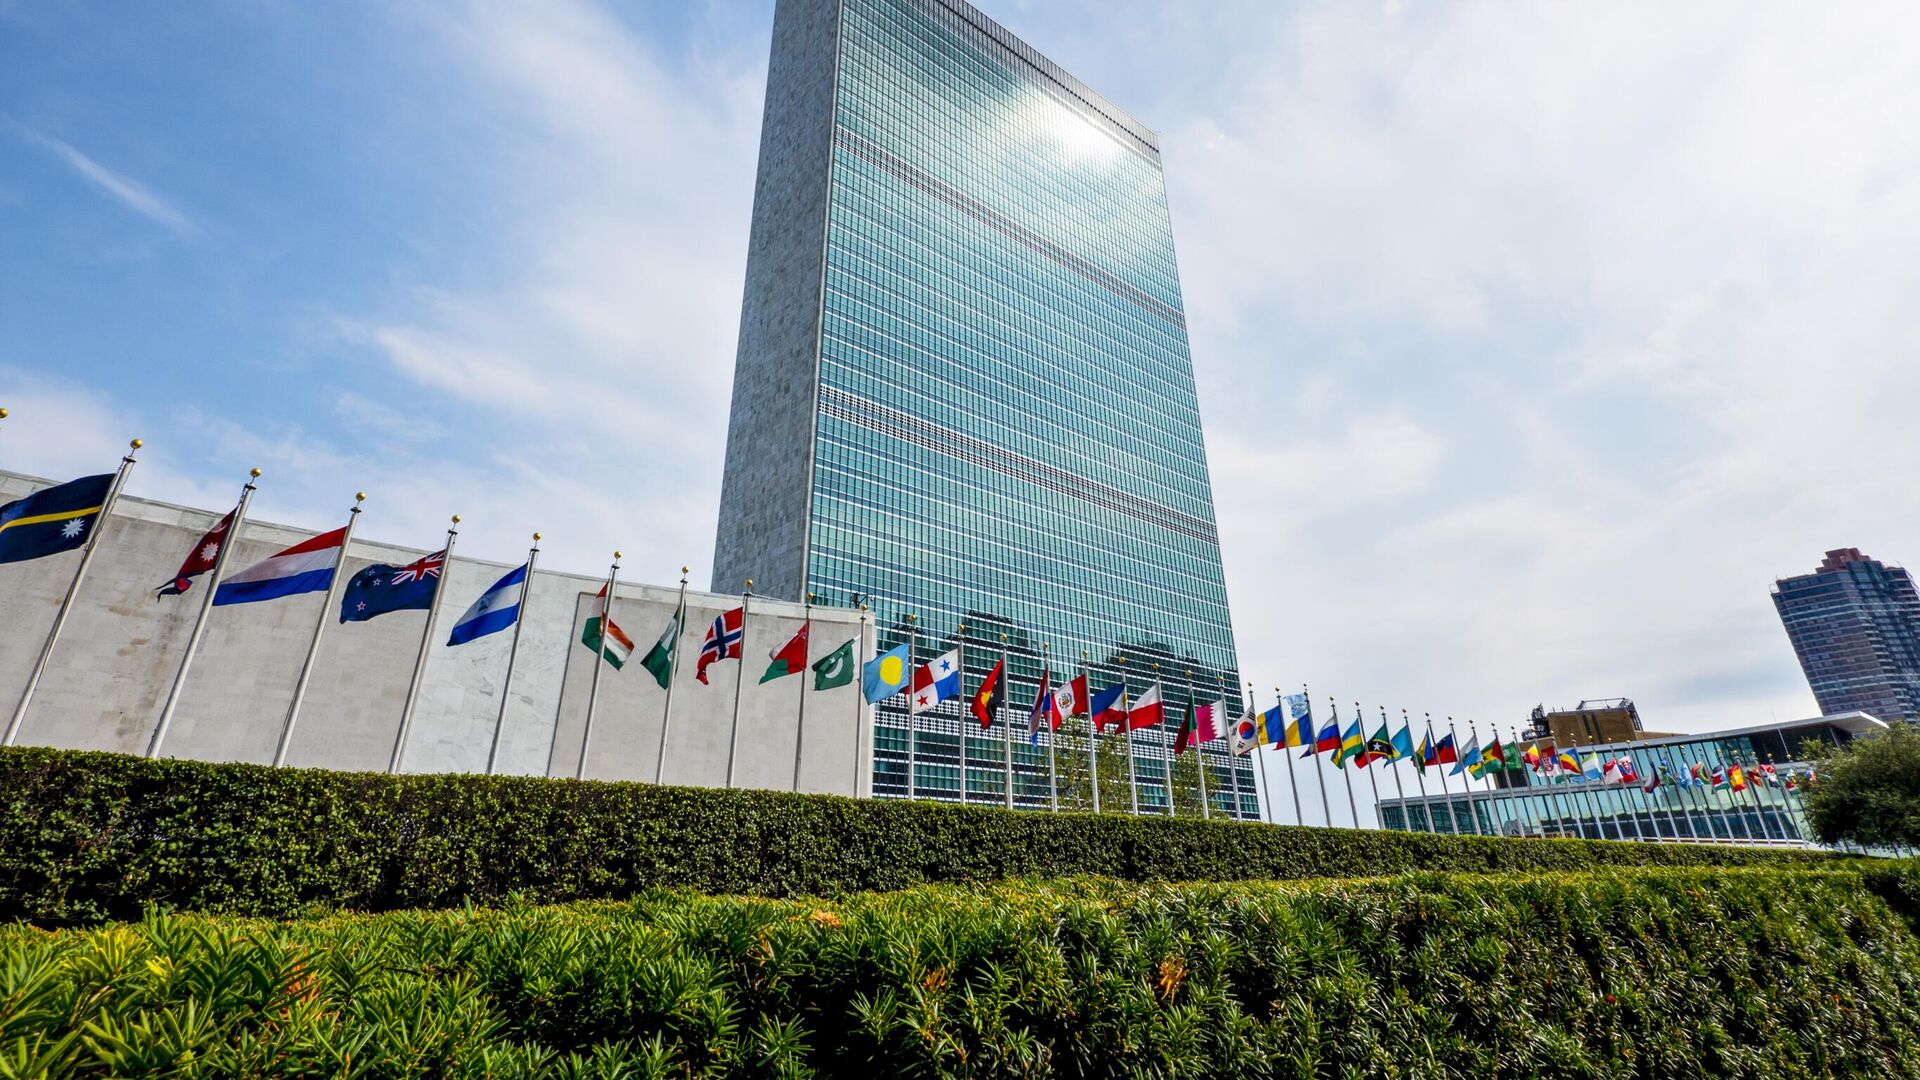 Дом оон. Штаб-квартира ООН В Нью-Йорке. Здание ООН В Нью-Йорке. Штаб квартира ООН В Москве. Нимейер штаб-квартиры ООН В Нью-Йорке.